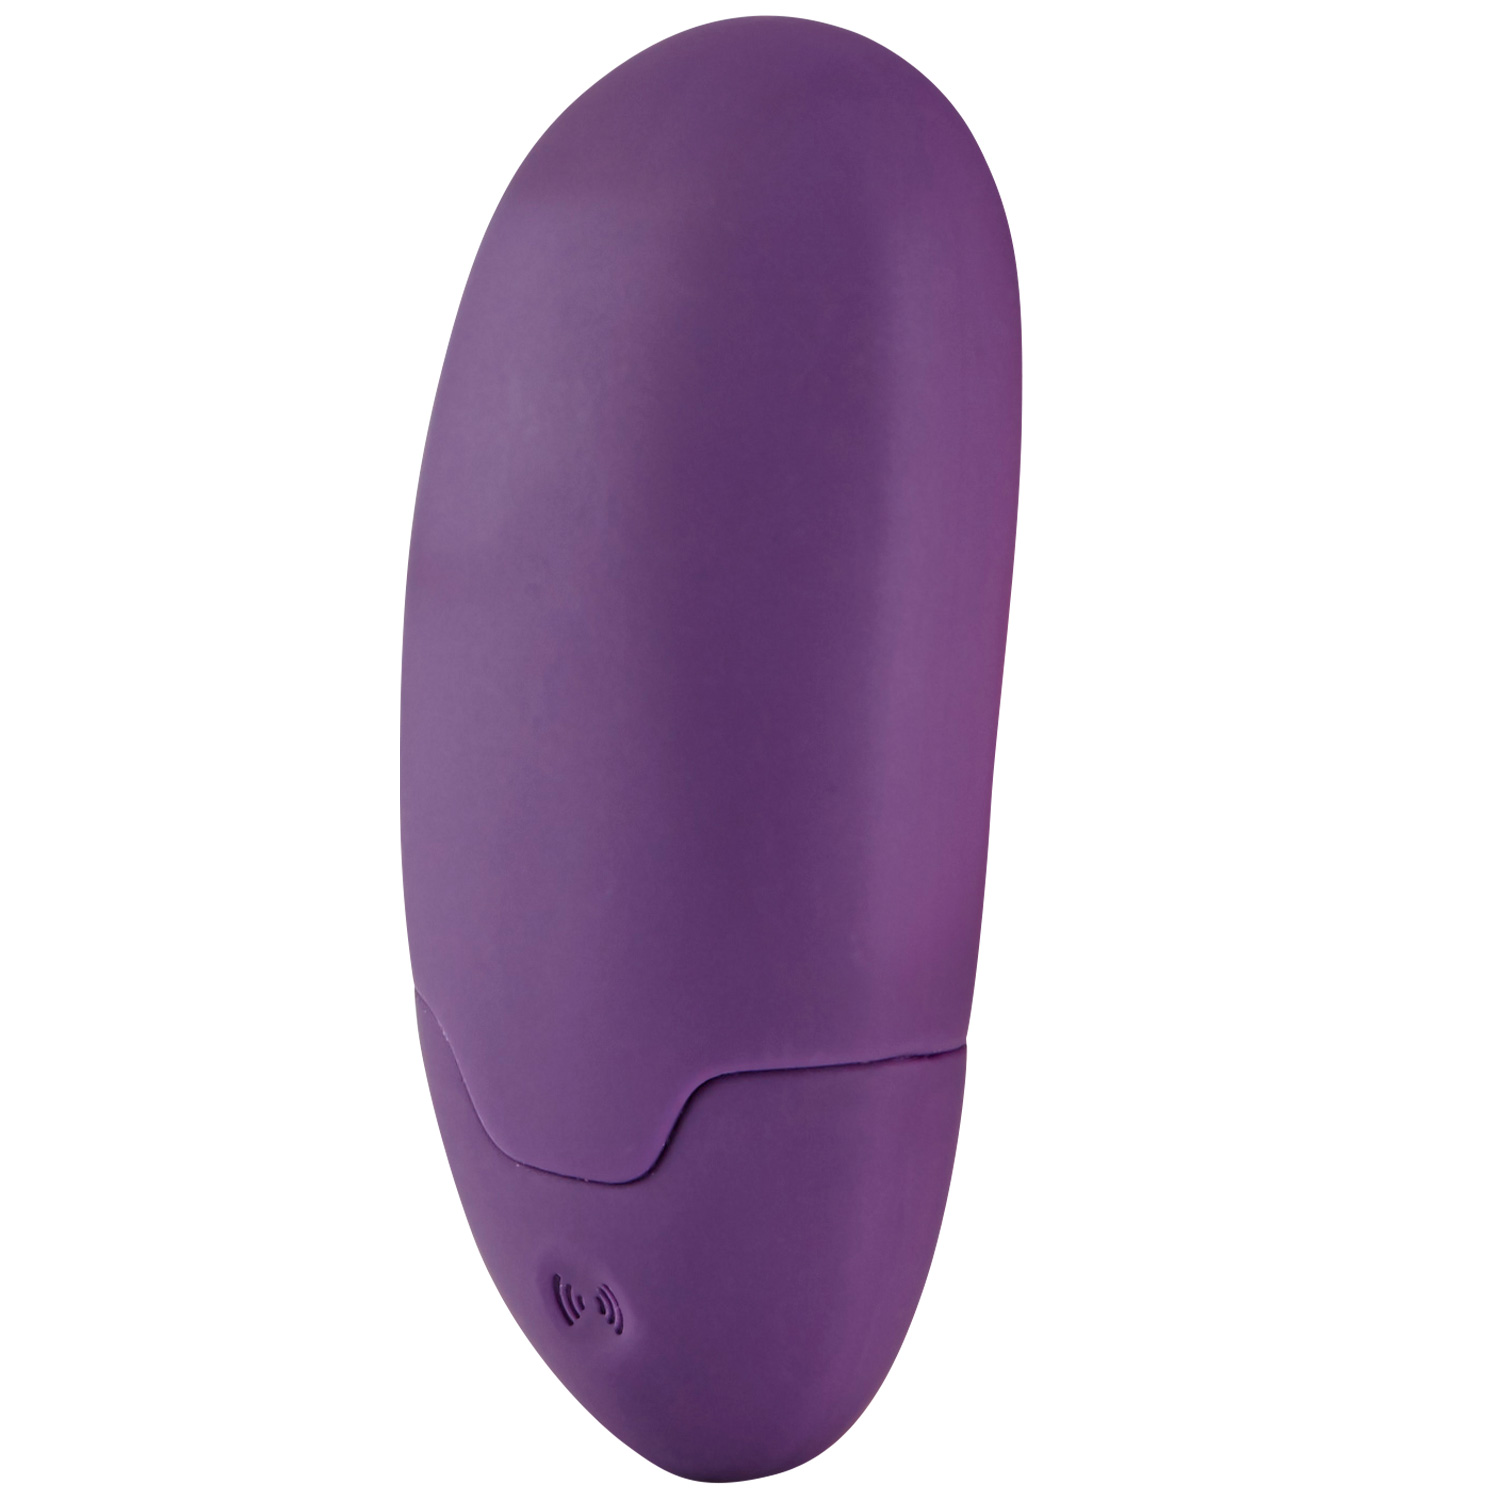 #1 på vores liste over klitoris vibrator er Klitoris Vibrator